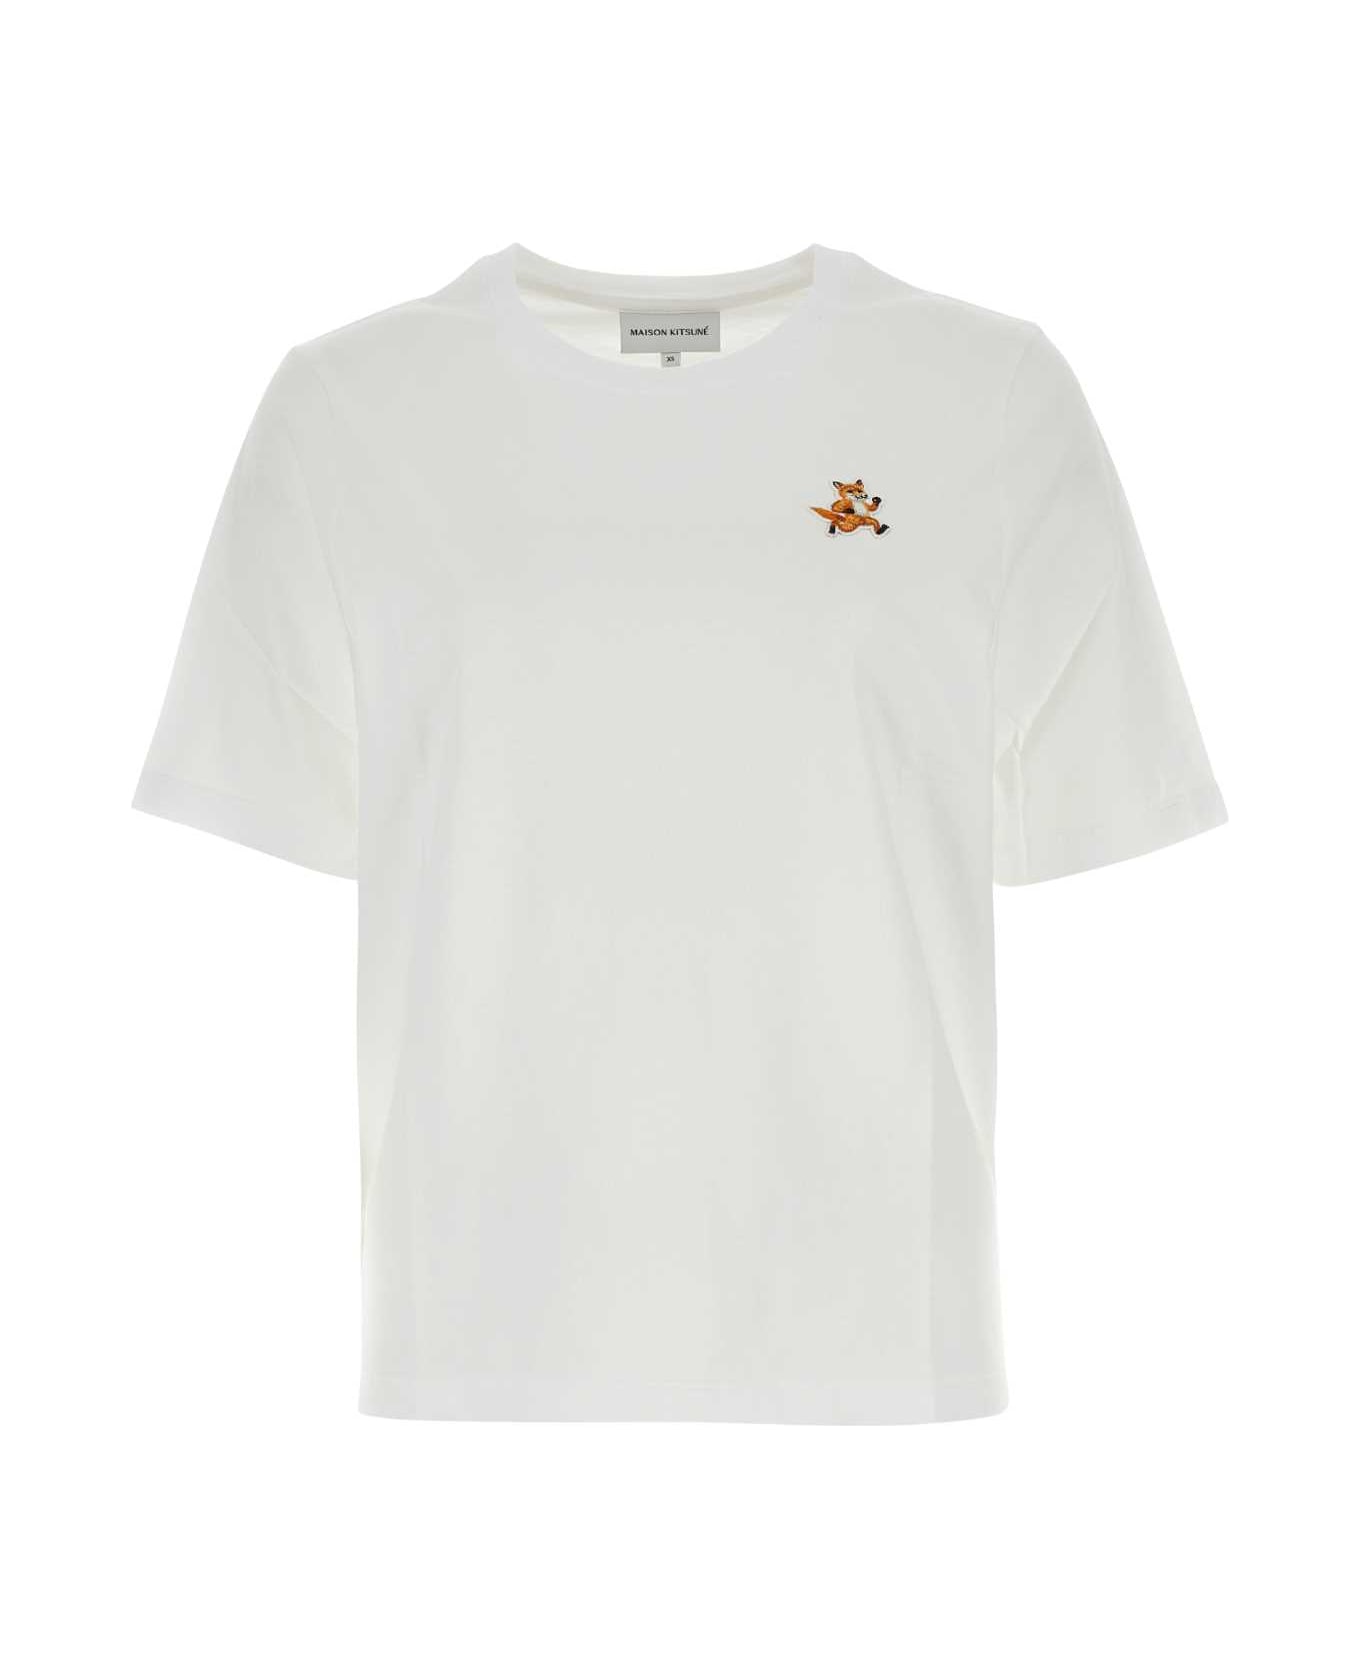 Maison Kitsuné White Cotton T-shirt - WHITE Tシャツ